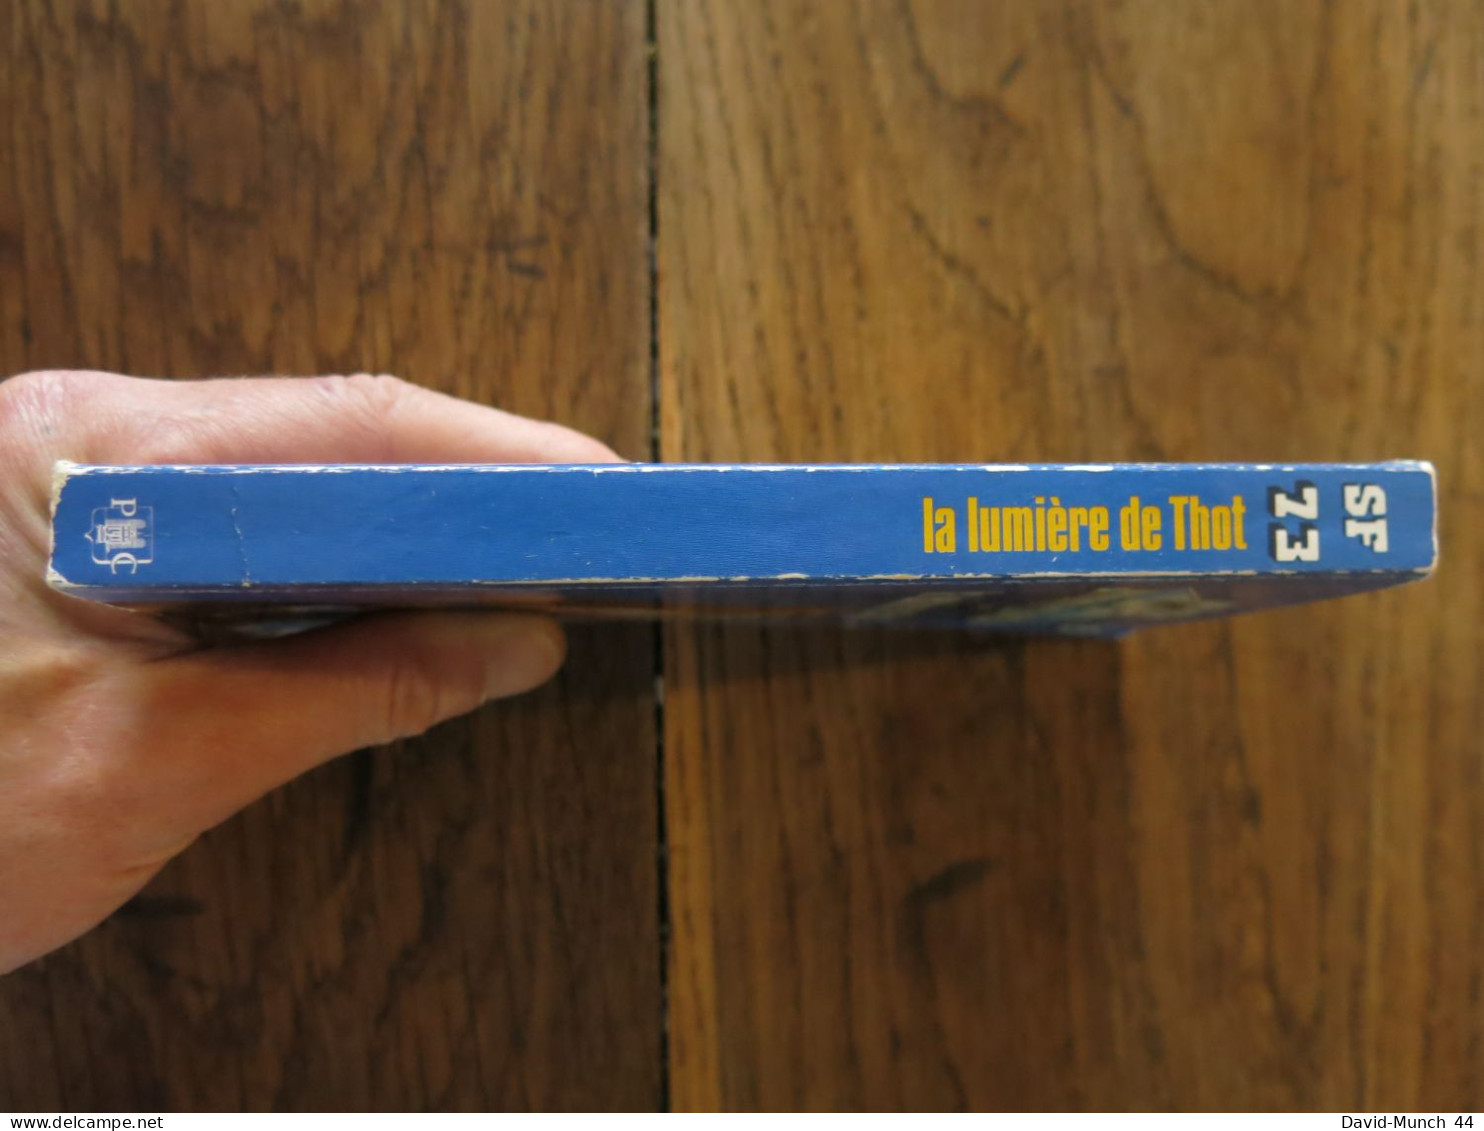 La Lumière De Thot De Jimmy Guieu. Presses De La Cité, Collection Science-fiction Jimmy Guieu N° 73. 1989 - Presses De La Cité